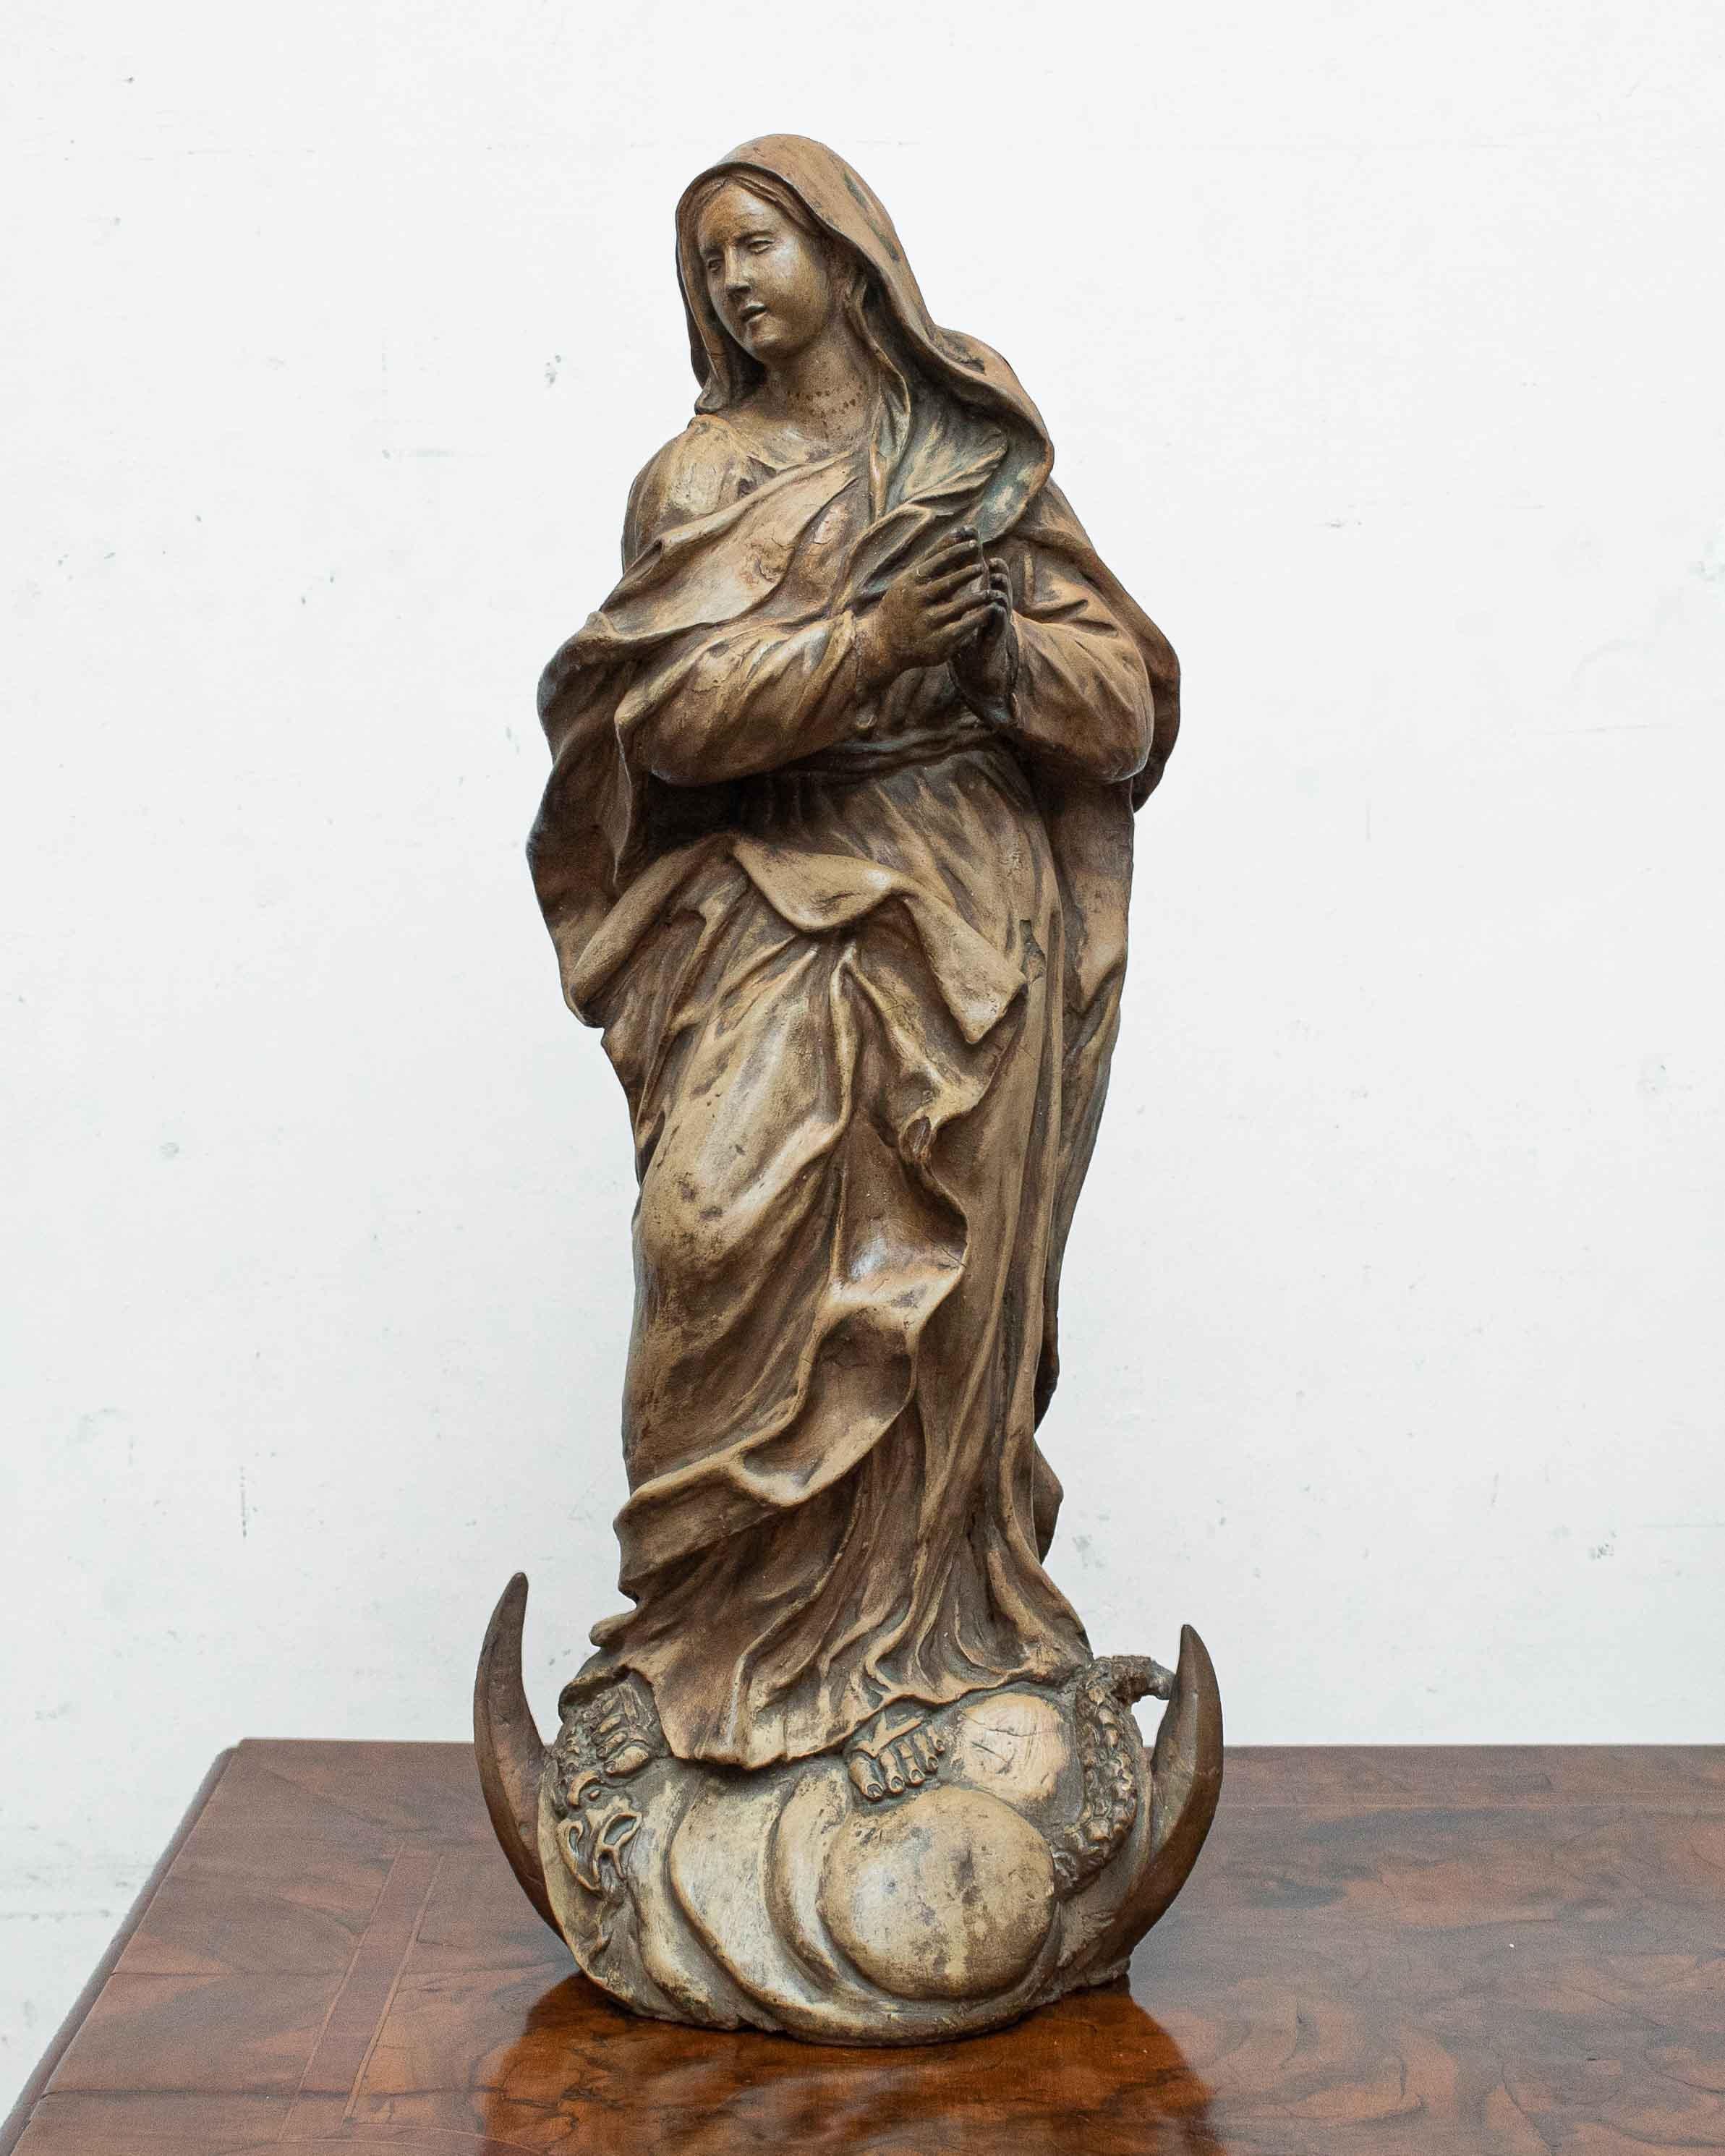 18ème siècle

Vierge Immaculée

Terre cuite, 53 x 22 x 20 cm

L'œuvre examinée représente la Vierge Marie traitée selon l'iconographie de la Vierge Immaculée.

Le thème de l'Immaculée Conception commence à apparaître dans les œuvres